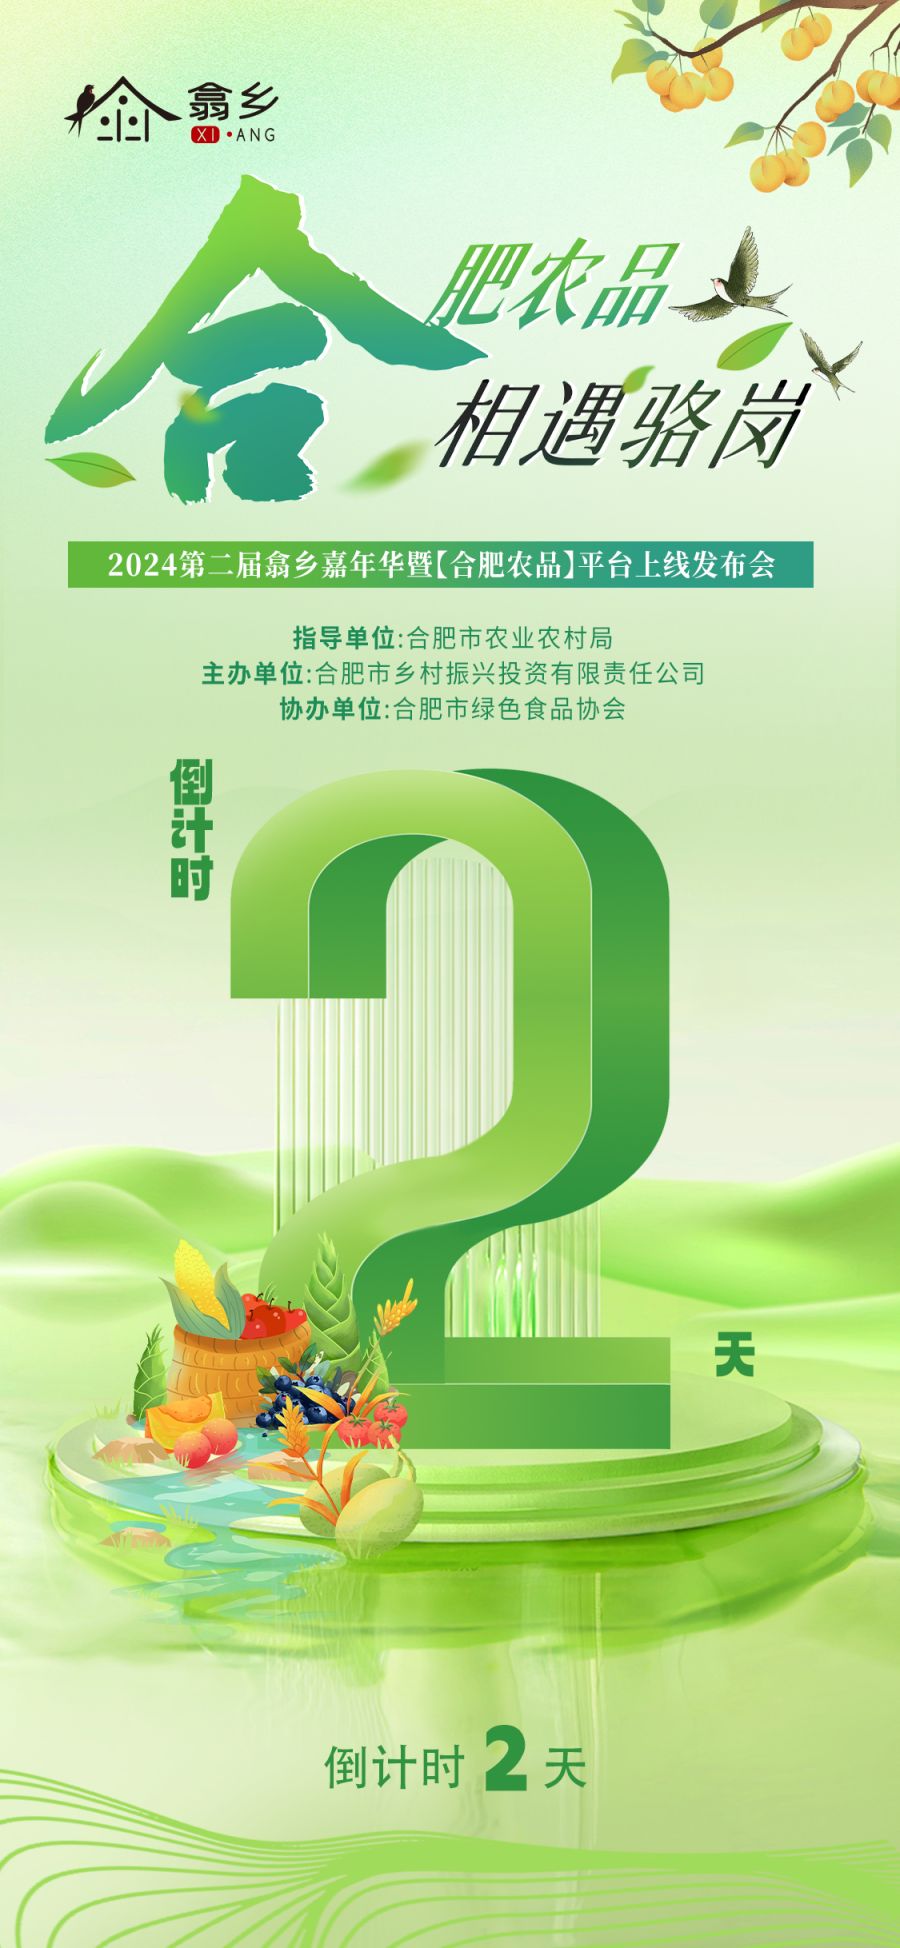 【倒计时2天】2024年第二届西乡嘉年华暨合肥农产品平台发布会即将开幕